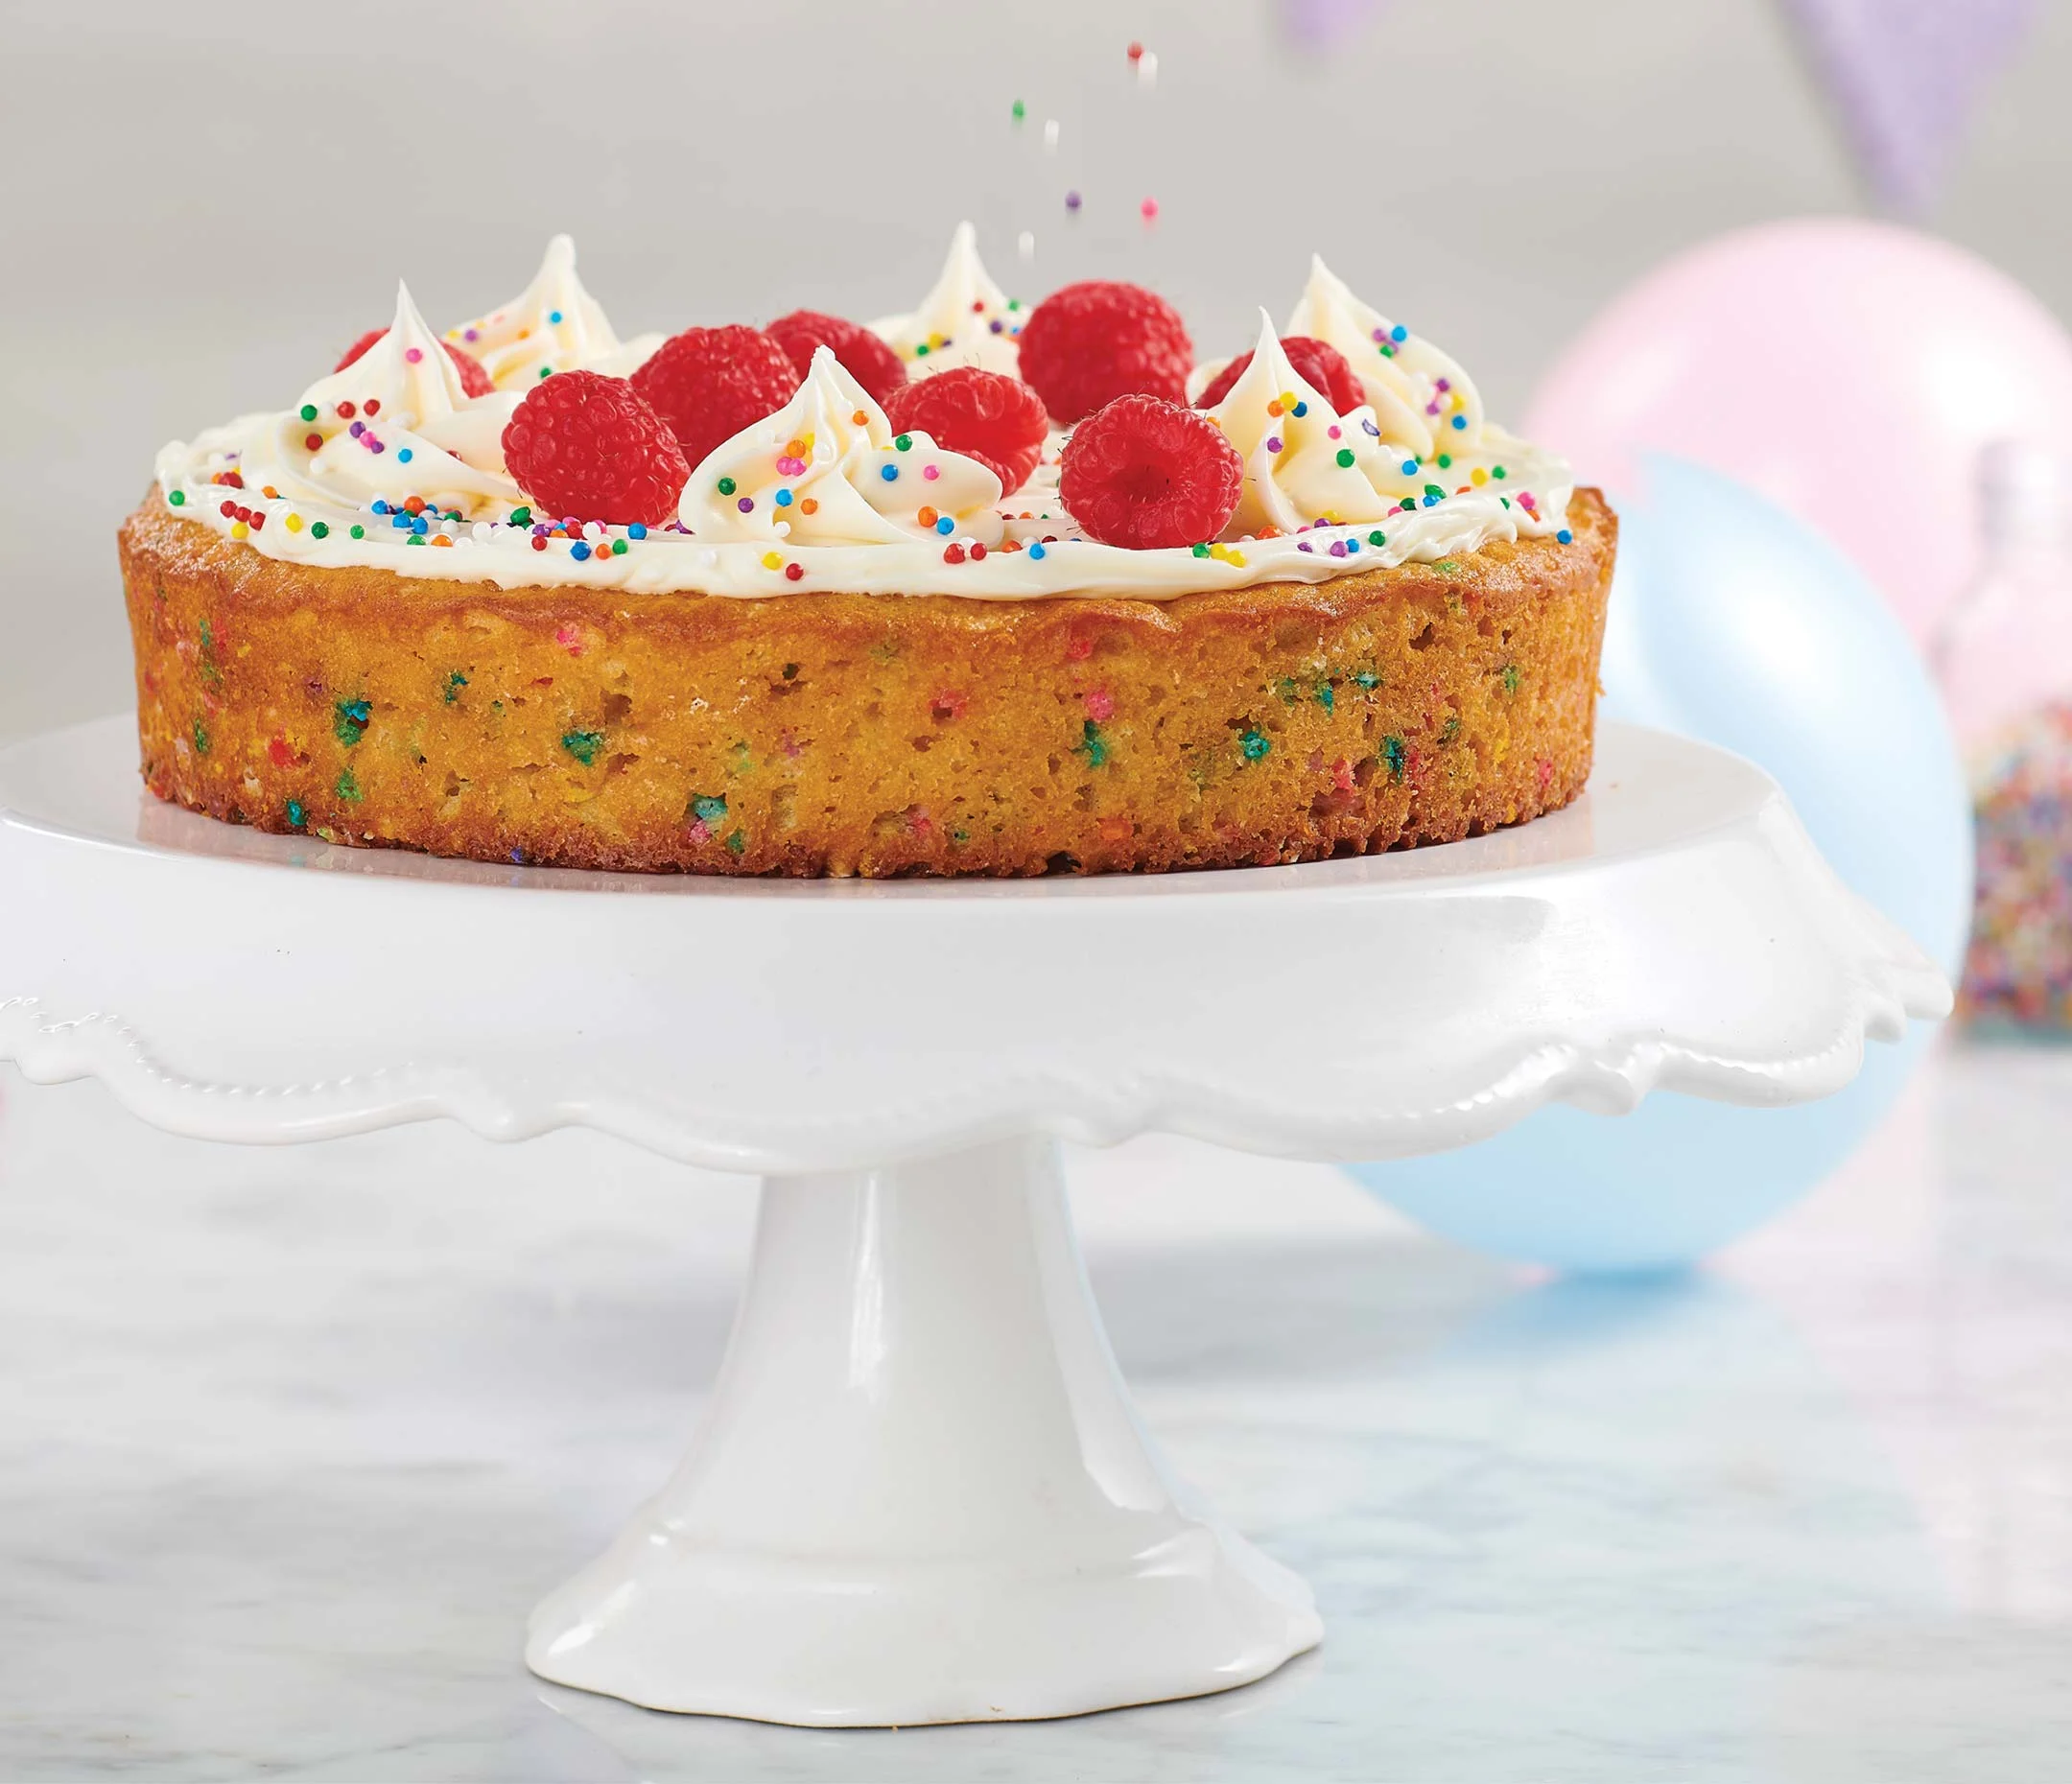 Fêtez l'anniversaire avec style - Top Gâteau Joyeux Anniversaire